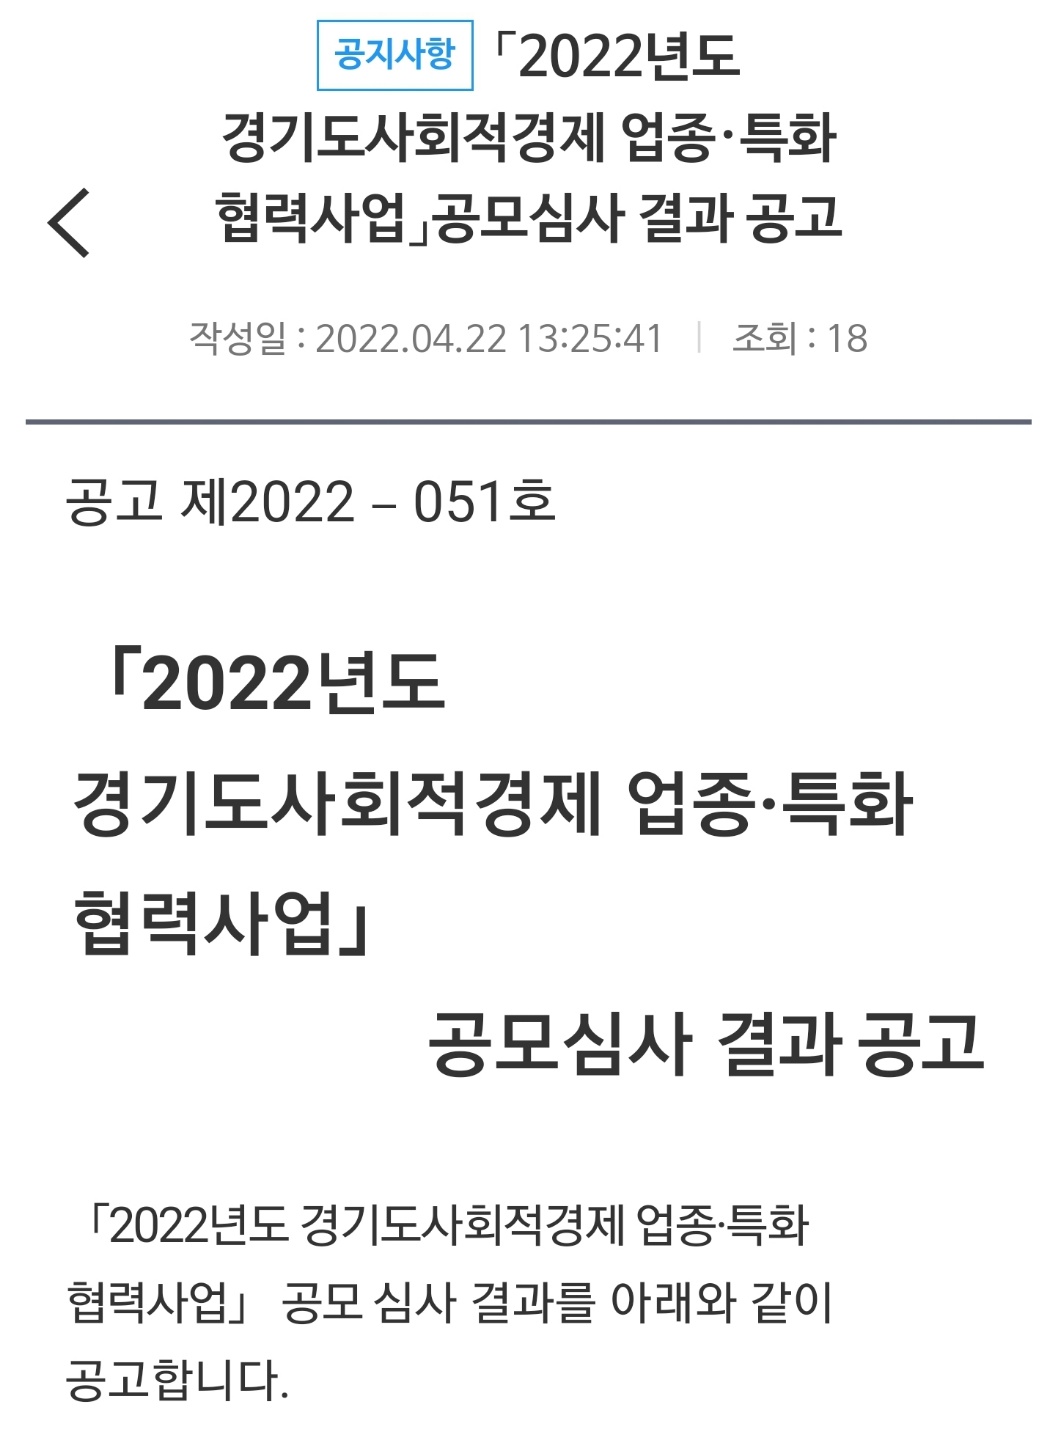 [소식] 「22년도 경기도사회적경제 업종ㆍ특화 협력사업」공모심사 결과 공고